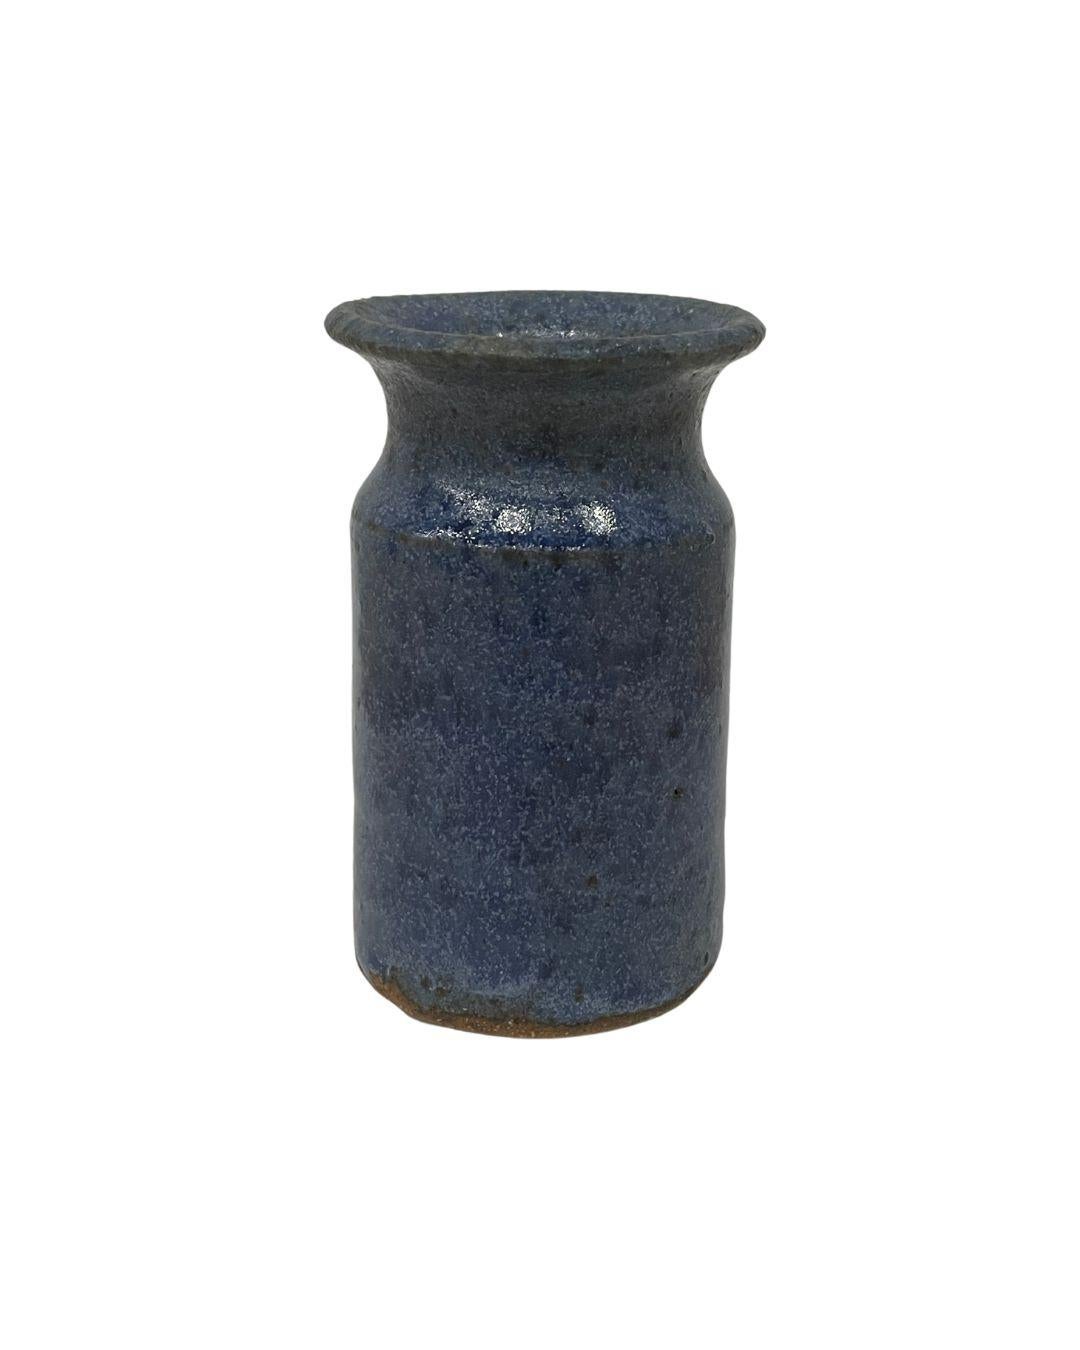 Ensemble de trois vases miniatures en poterie bleue mouchetée. La glaçure mate panachée de ces pièces vintage leur donne la couleur d'une paire de jeans bien usée. 

Dimensions : Chaque vase mesure environ 3,25 